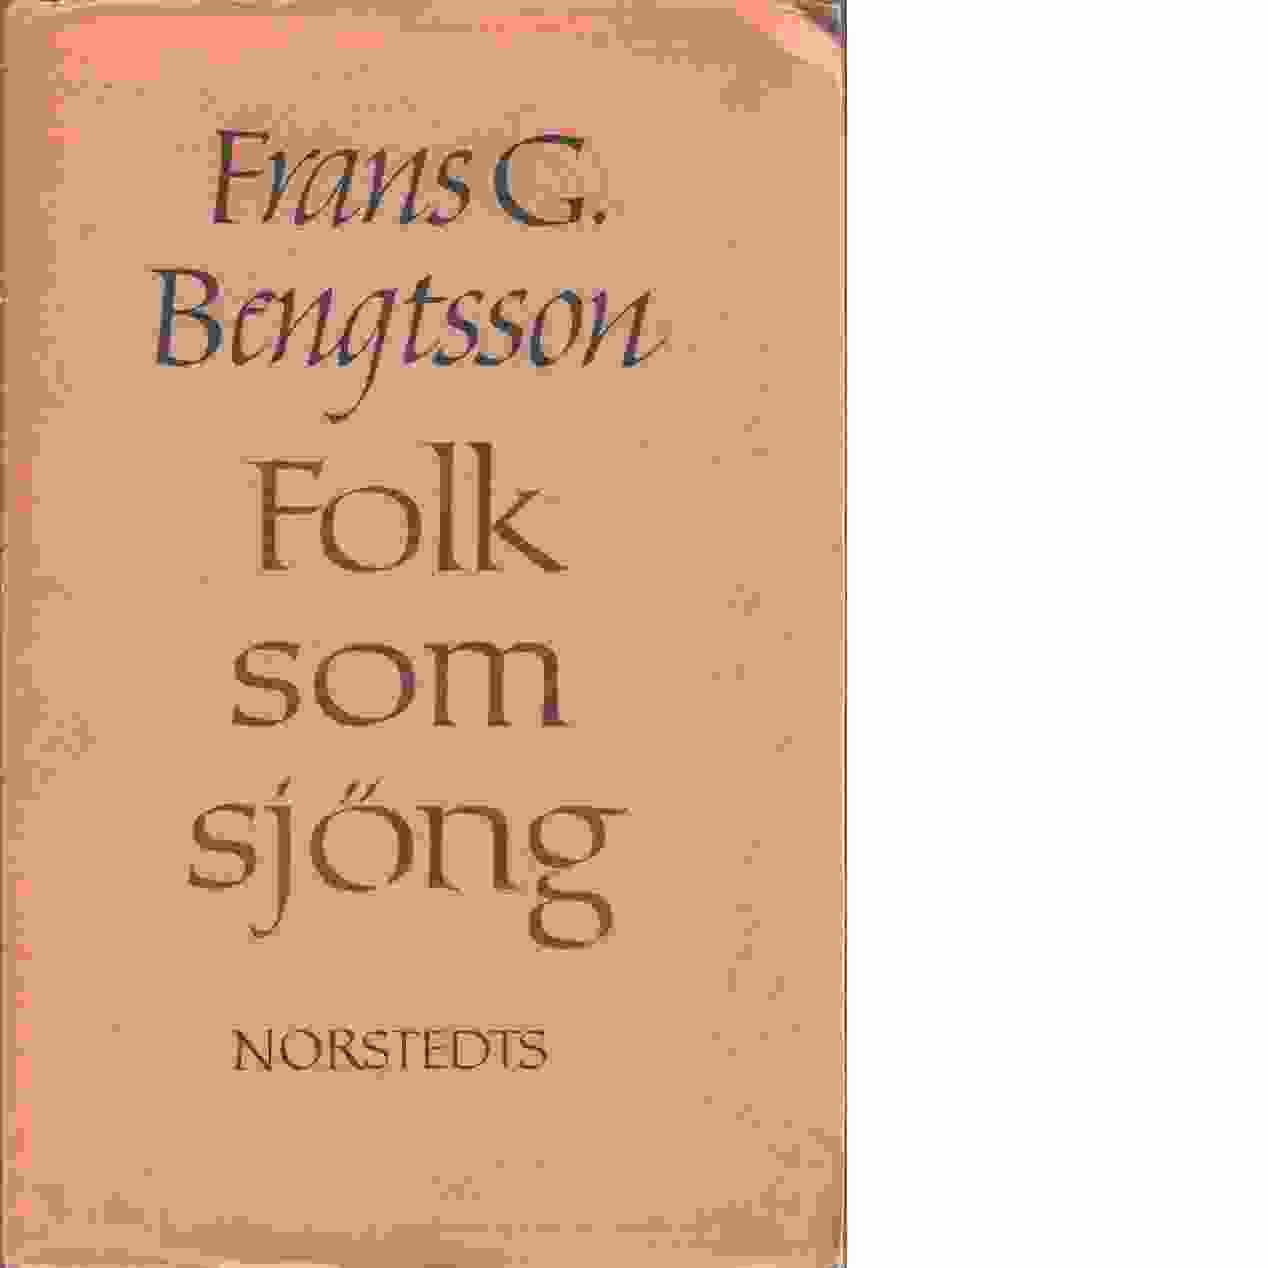 Folk som sjöng och andra essayer - Bengtsson, Frans G.